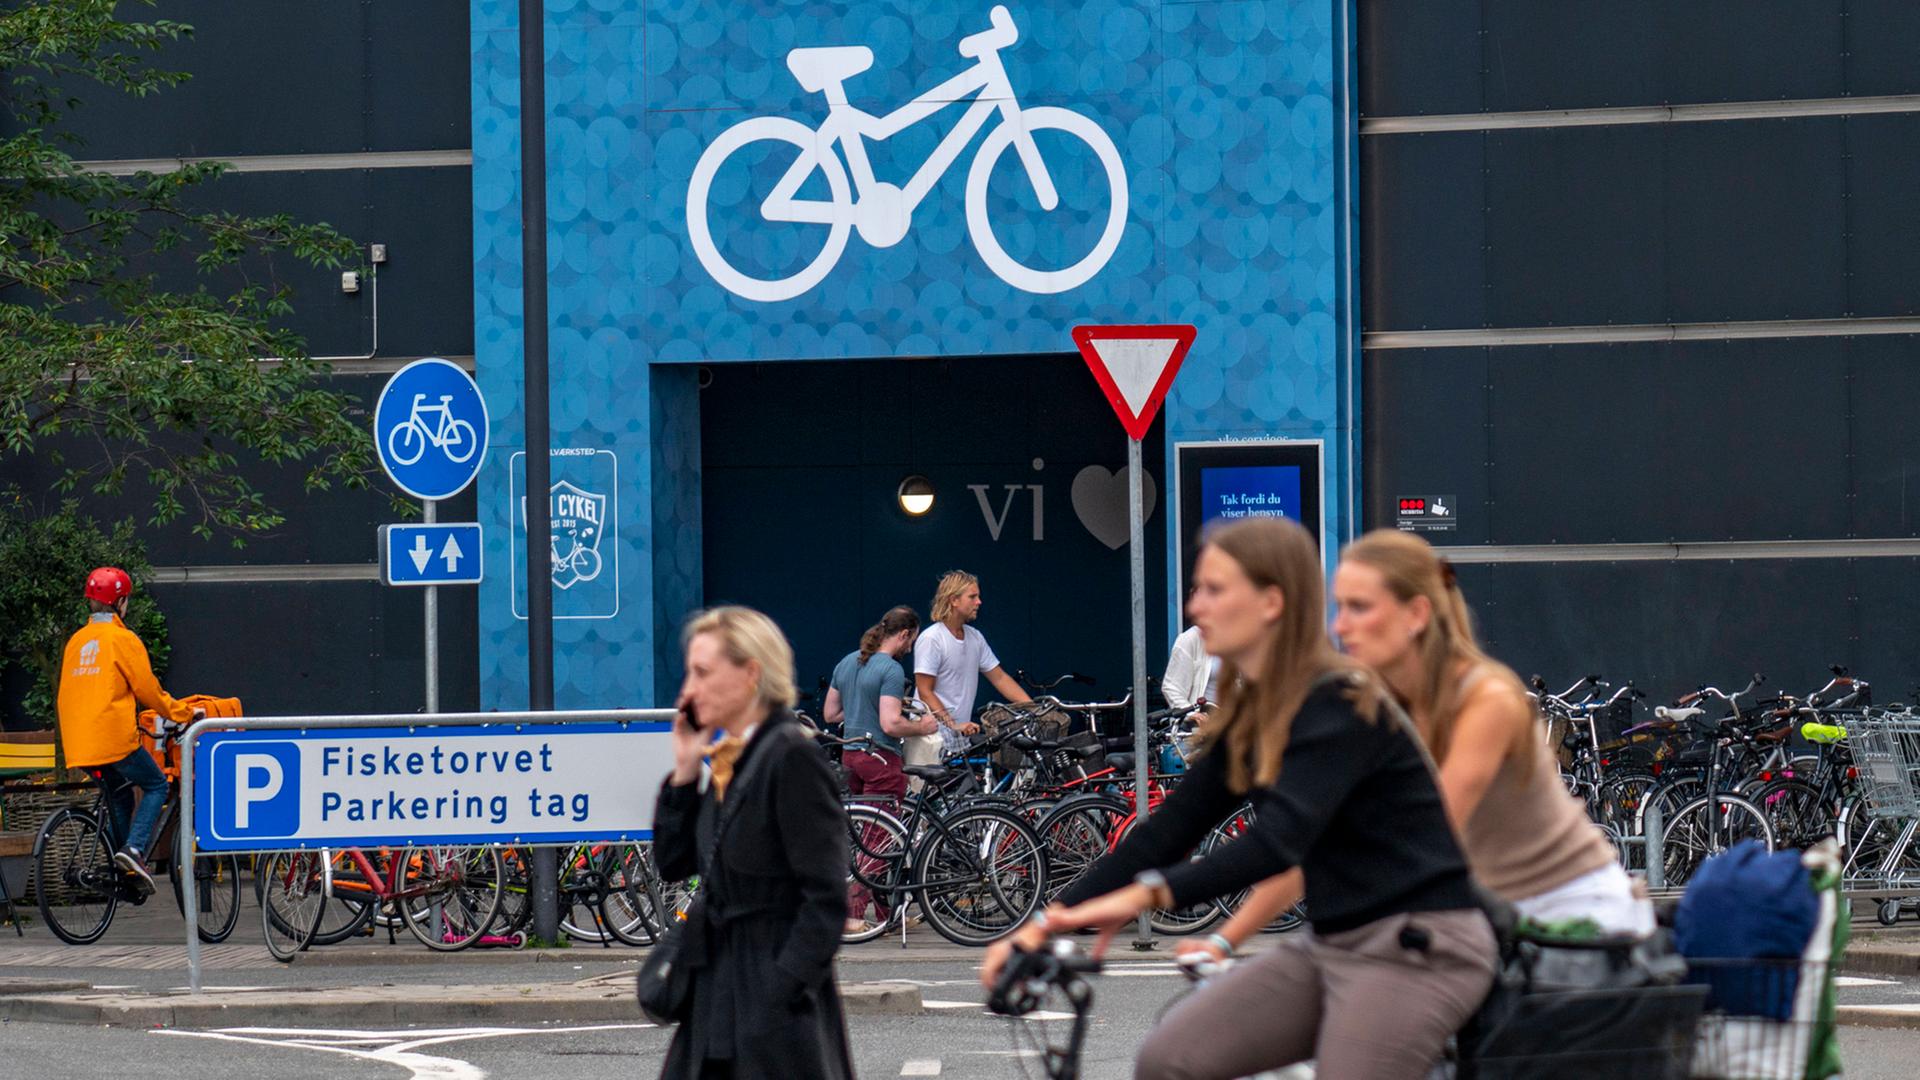 Radfahrer auf Radwegen, Fahrradparkhaus am Einkaufszentrum Fisketorvet, Sydhavnen, in der Innenstadt von Kopenhagen, gil